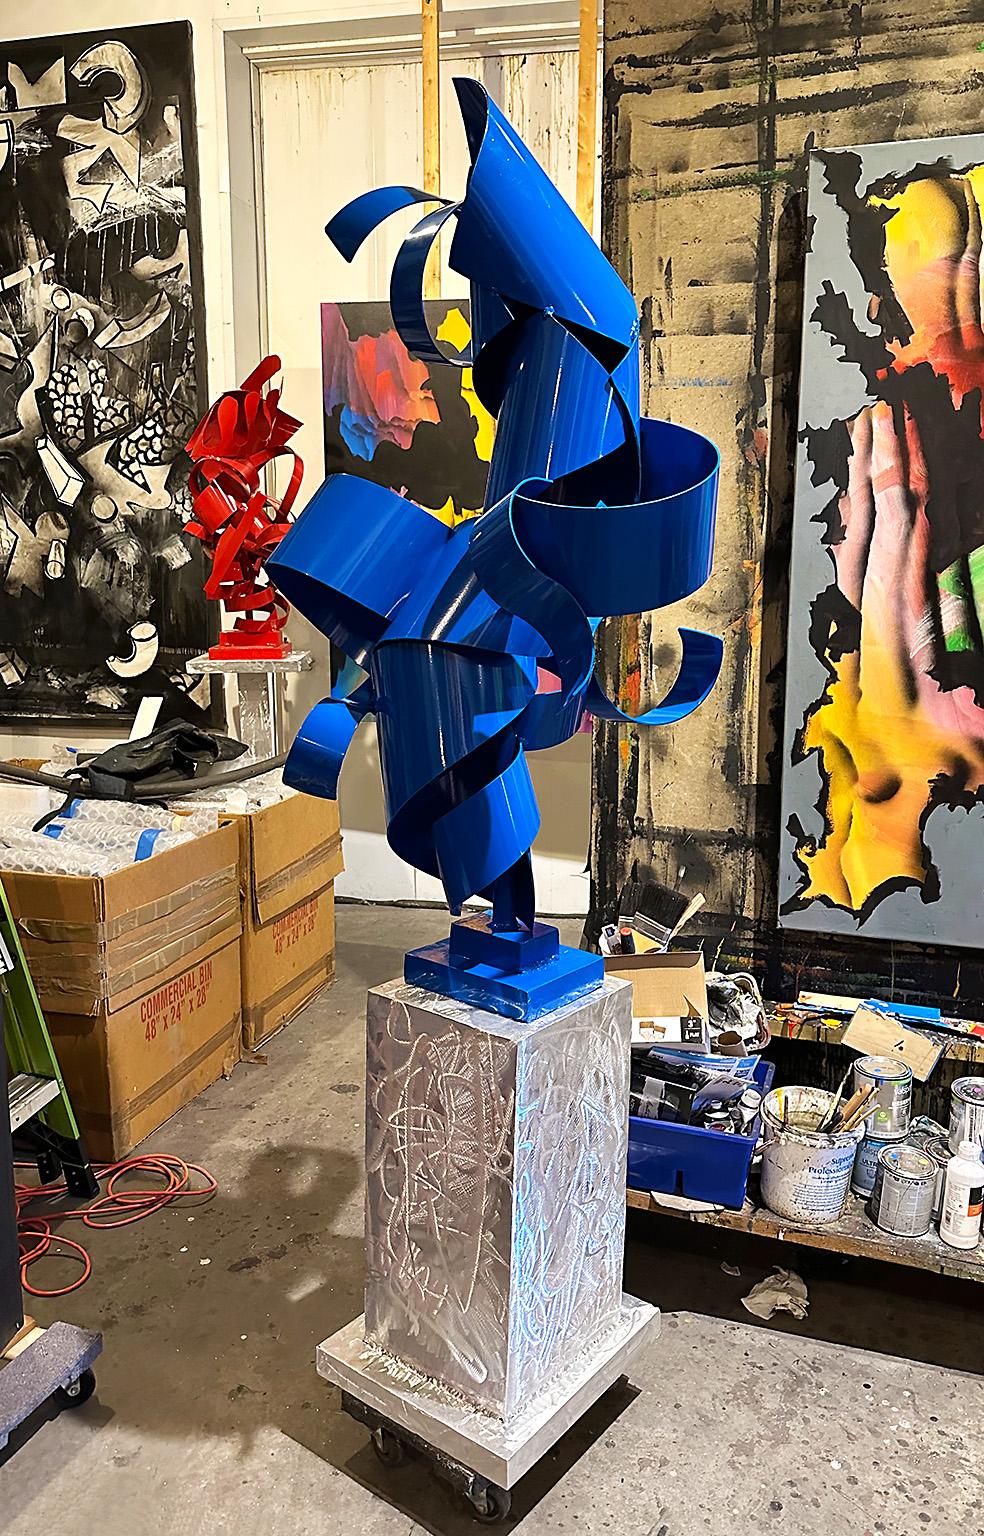 Abstract Sculpture Richard Pitts - Sculpture abstraite en métal aluminium bleu à grande échelle